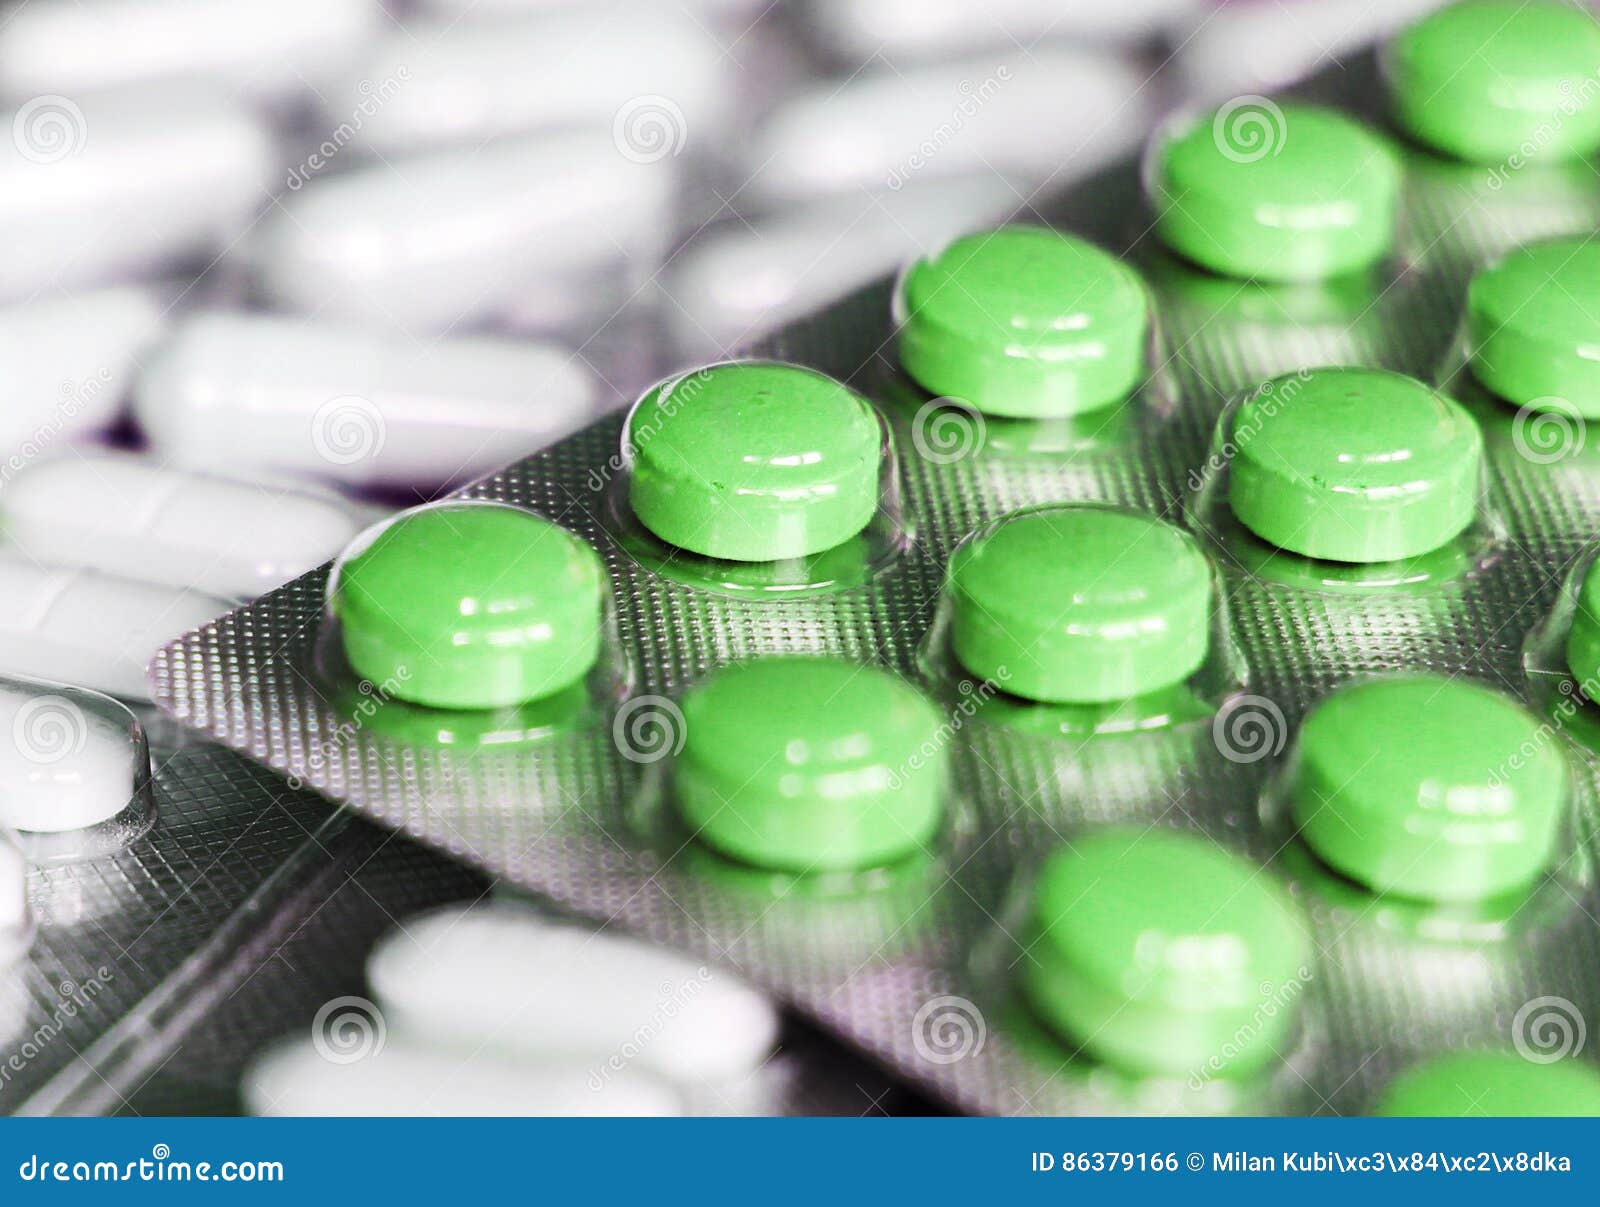 Зеленые антибиотики. Зеленые таблетки. Зеленые таблетки антидепрессанты. Антибиотики зеленые. Таблетки зеленого цвета.